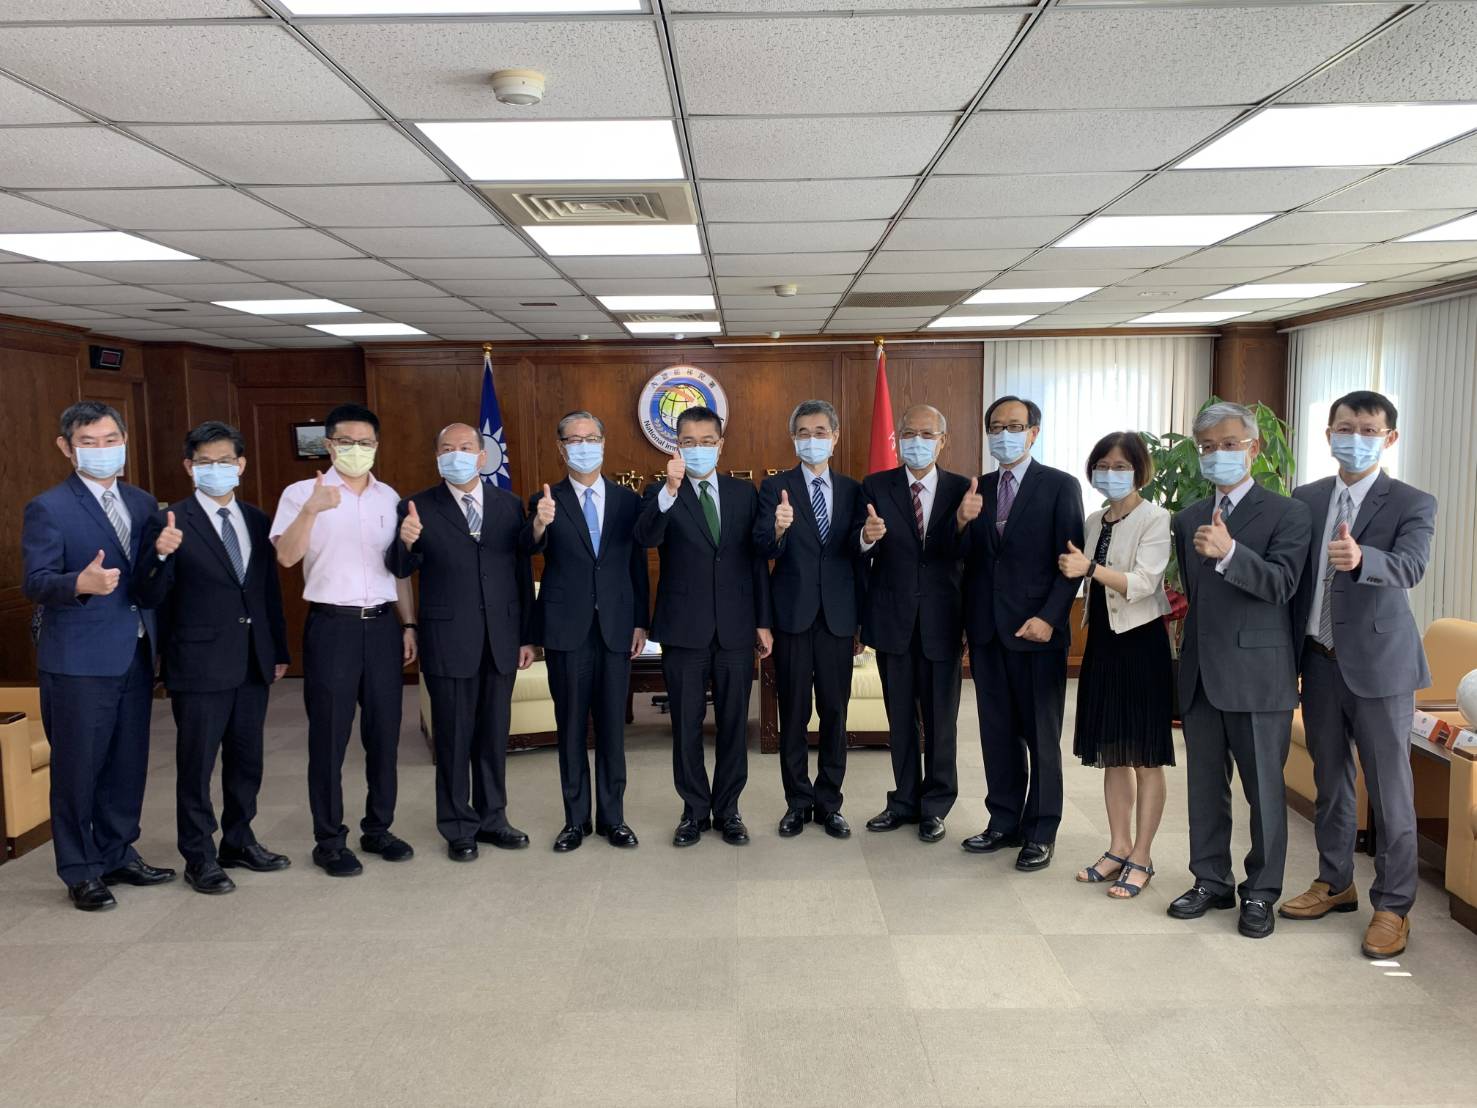 Bộ trưởng Bộ Nội chính Từ Quốc Dũng (chính giữa) chụp hình chung với Giám đốc Sở Di dân Chung Cảnh Côn (thứ 5 bên trái) và các cán bộ viên chức. (Nguồn ảnh: Sở Di dân cung cấp)